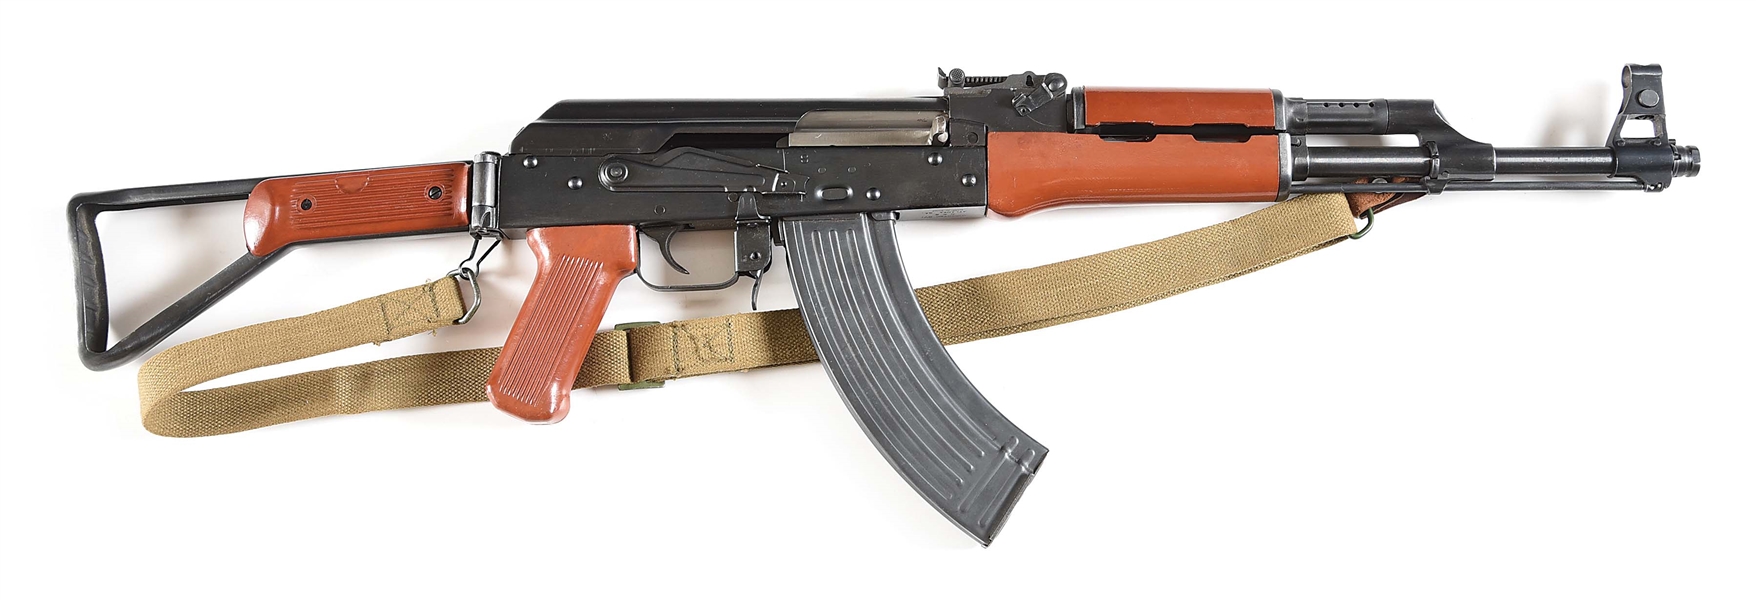 (M) DESIRABLE PRE-BAN POLYTECH MODEL AKS-762 BAKELITE SIDE-FOLDING SEMI-AUTOMATIC RIFLE 